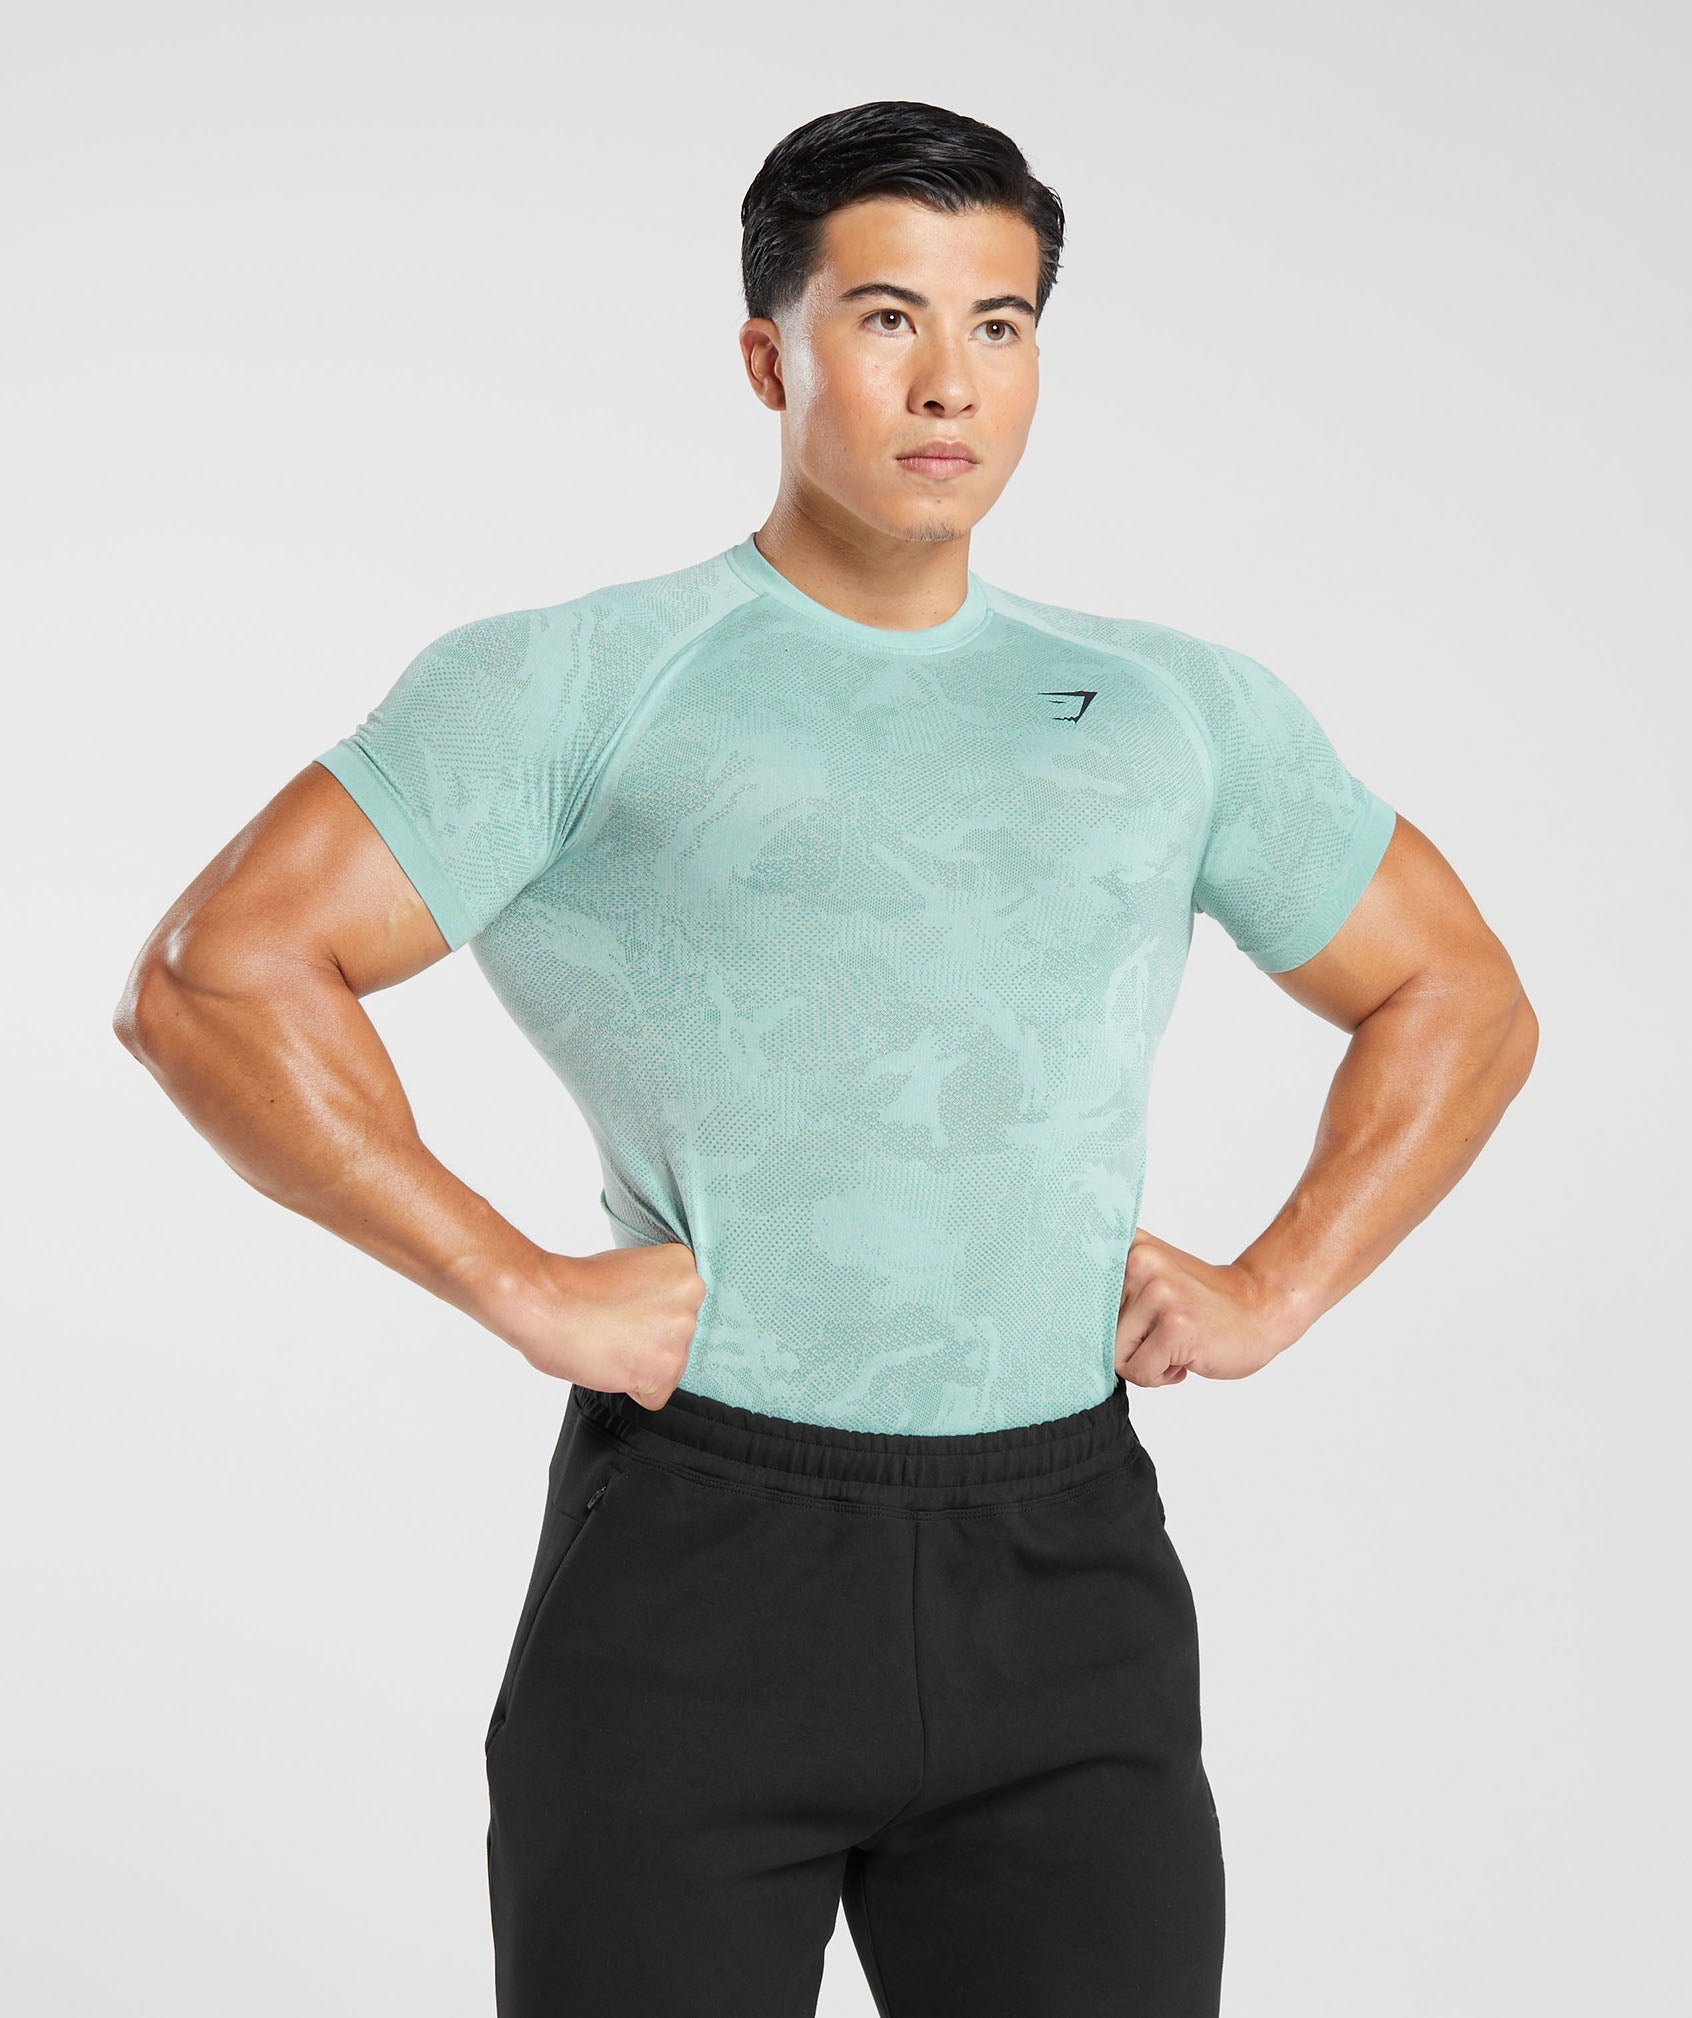 Gymshark Men's Baselayer Top Element Baselayer T-Shirt - New